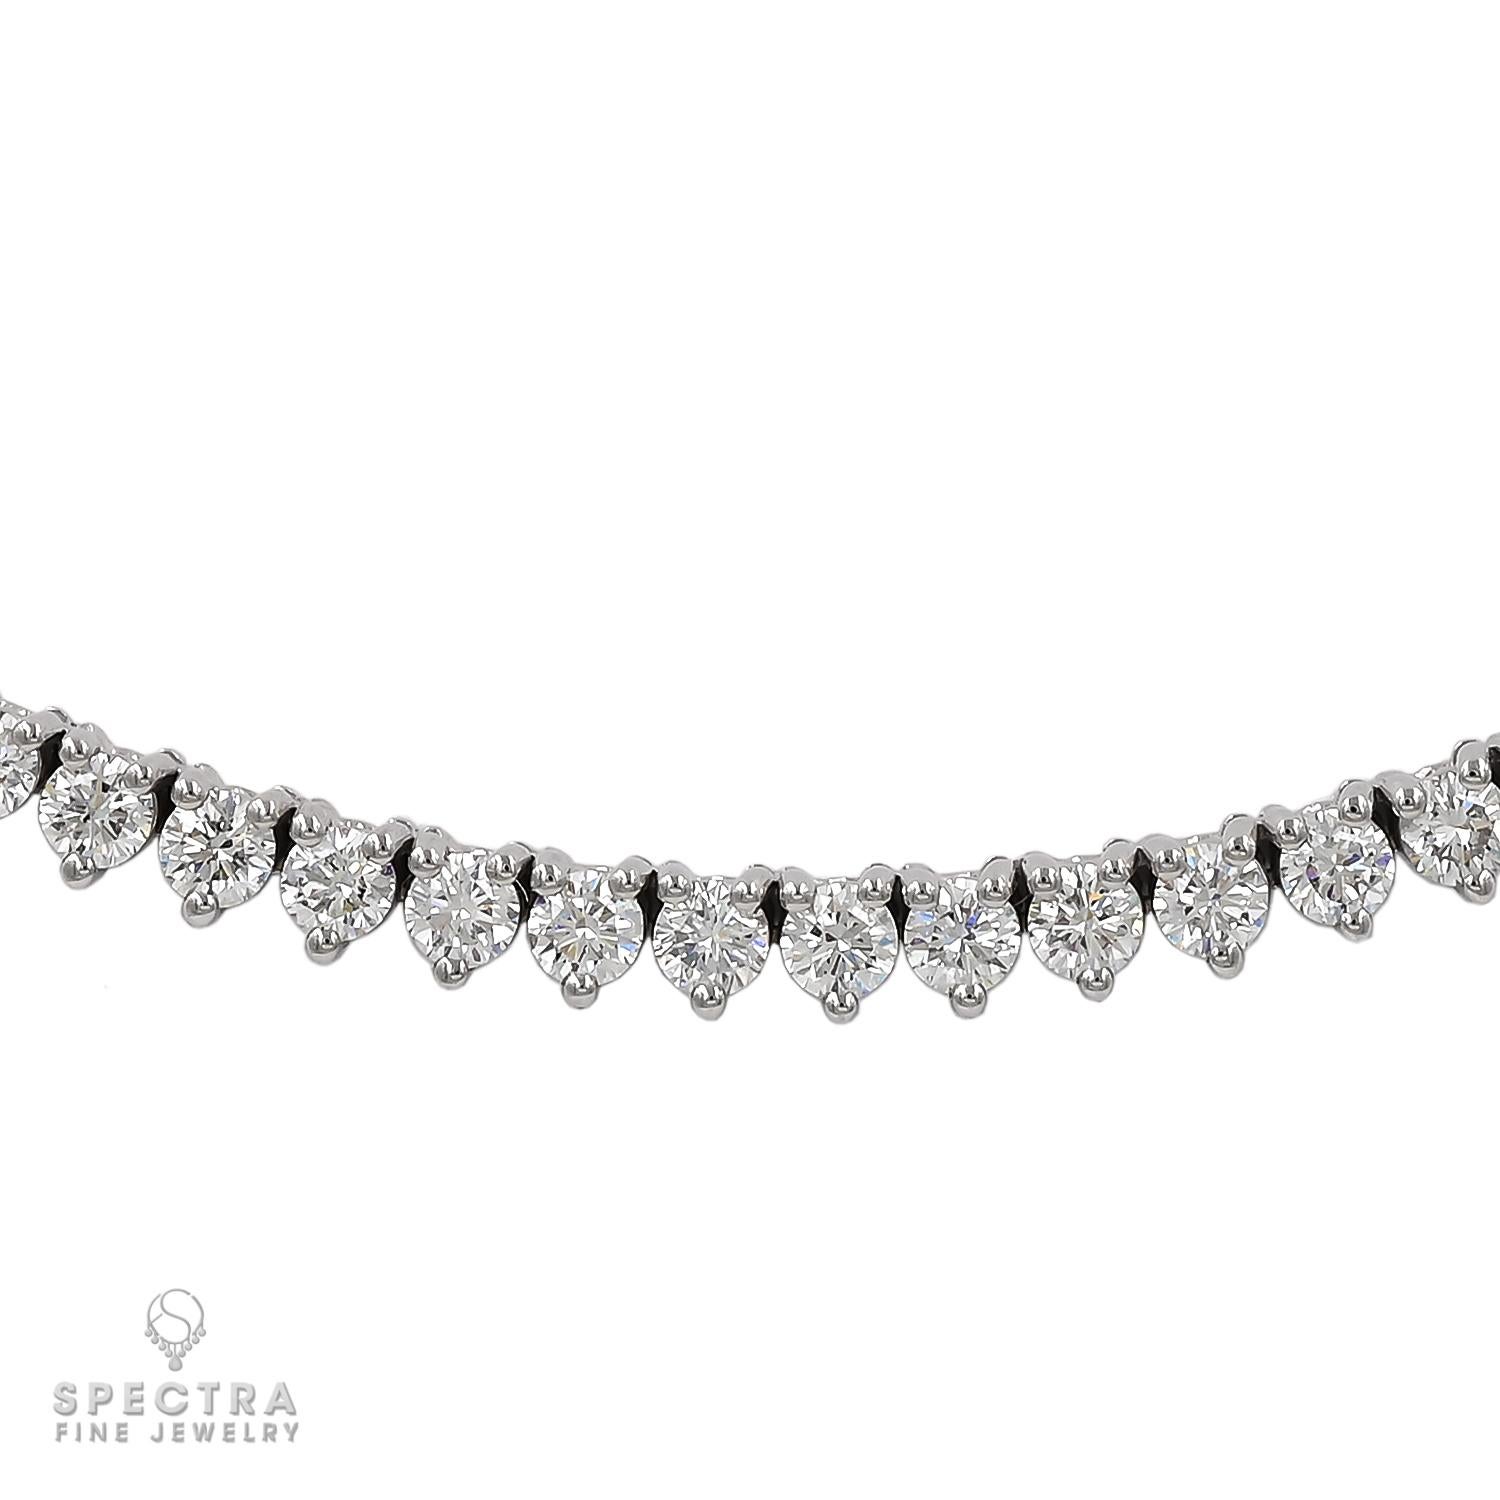 Gönnen Sie sich den ultimativen Luxus mit dieser exquisiten 7,89 Karat runden Diamant-Tennis-Halskette aus 18 Karat Weißgold. Jedes Detail dieses atemberaubenden Stücks zeugt von Eleganz und Raffinesse.

Mit 135 runden Diamanten im Brillantschliff